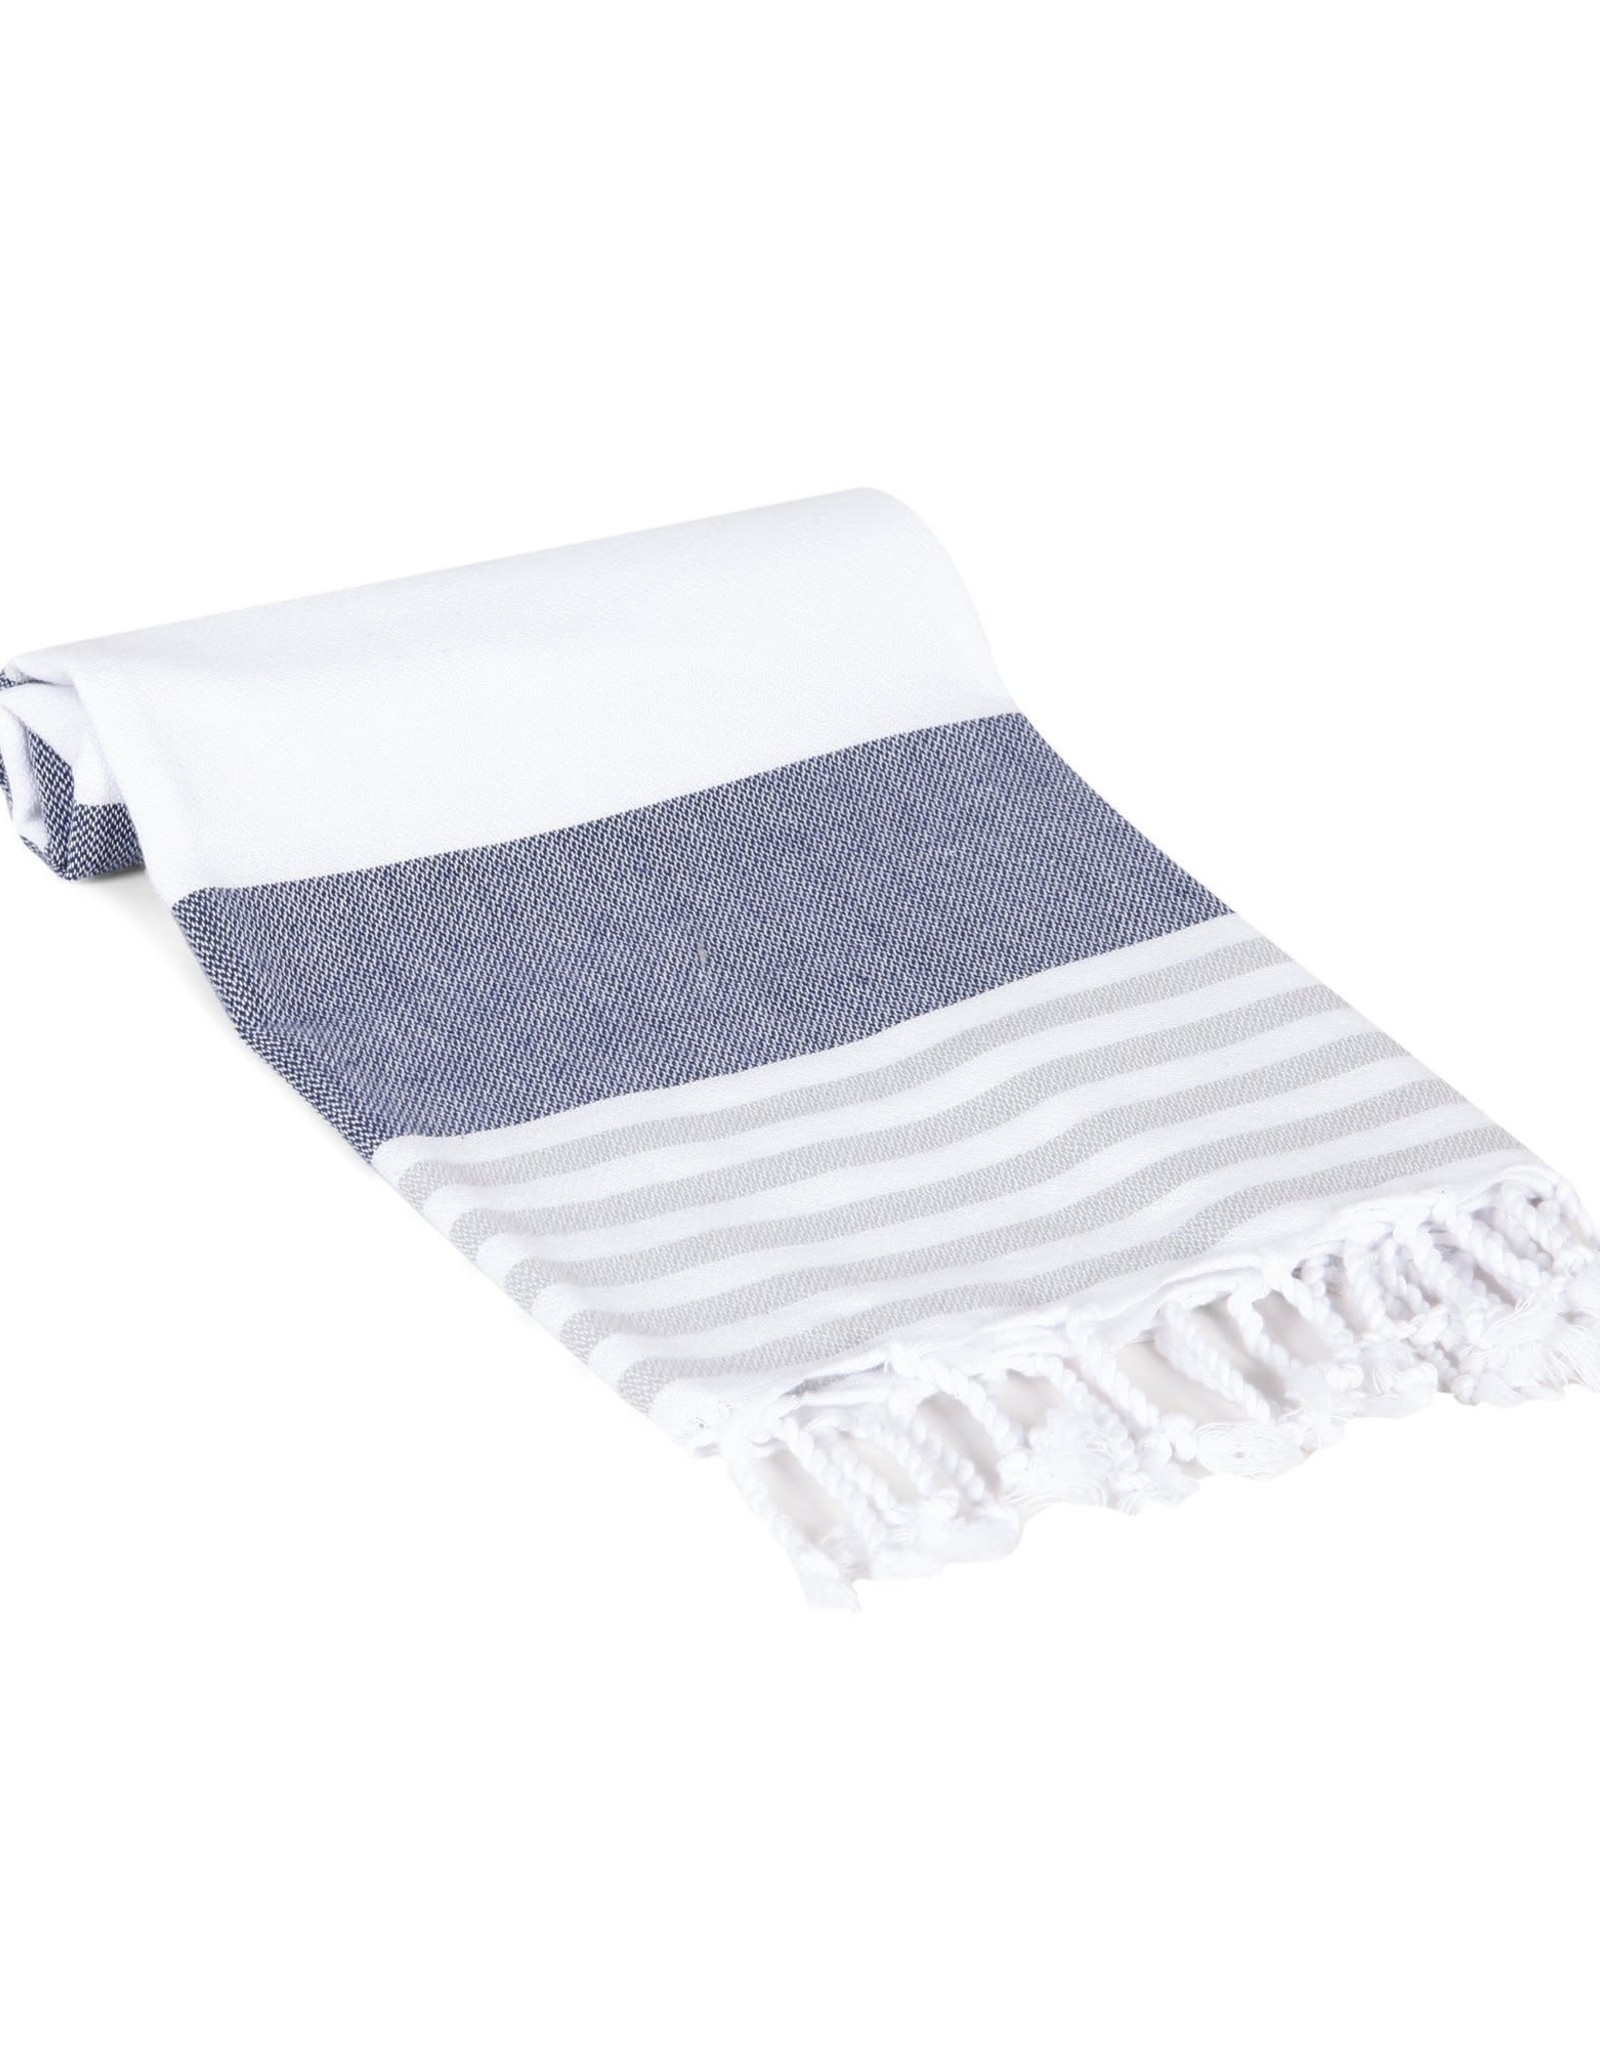 Multicolor Stripe Turkish Hand Towel - Grey/ Navy